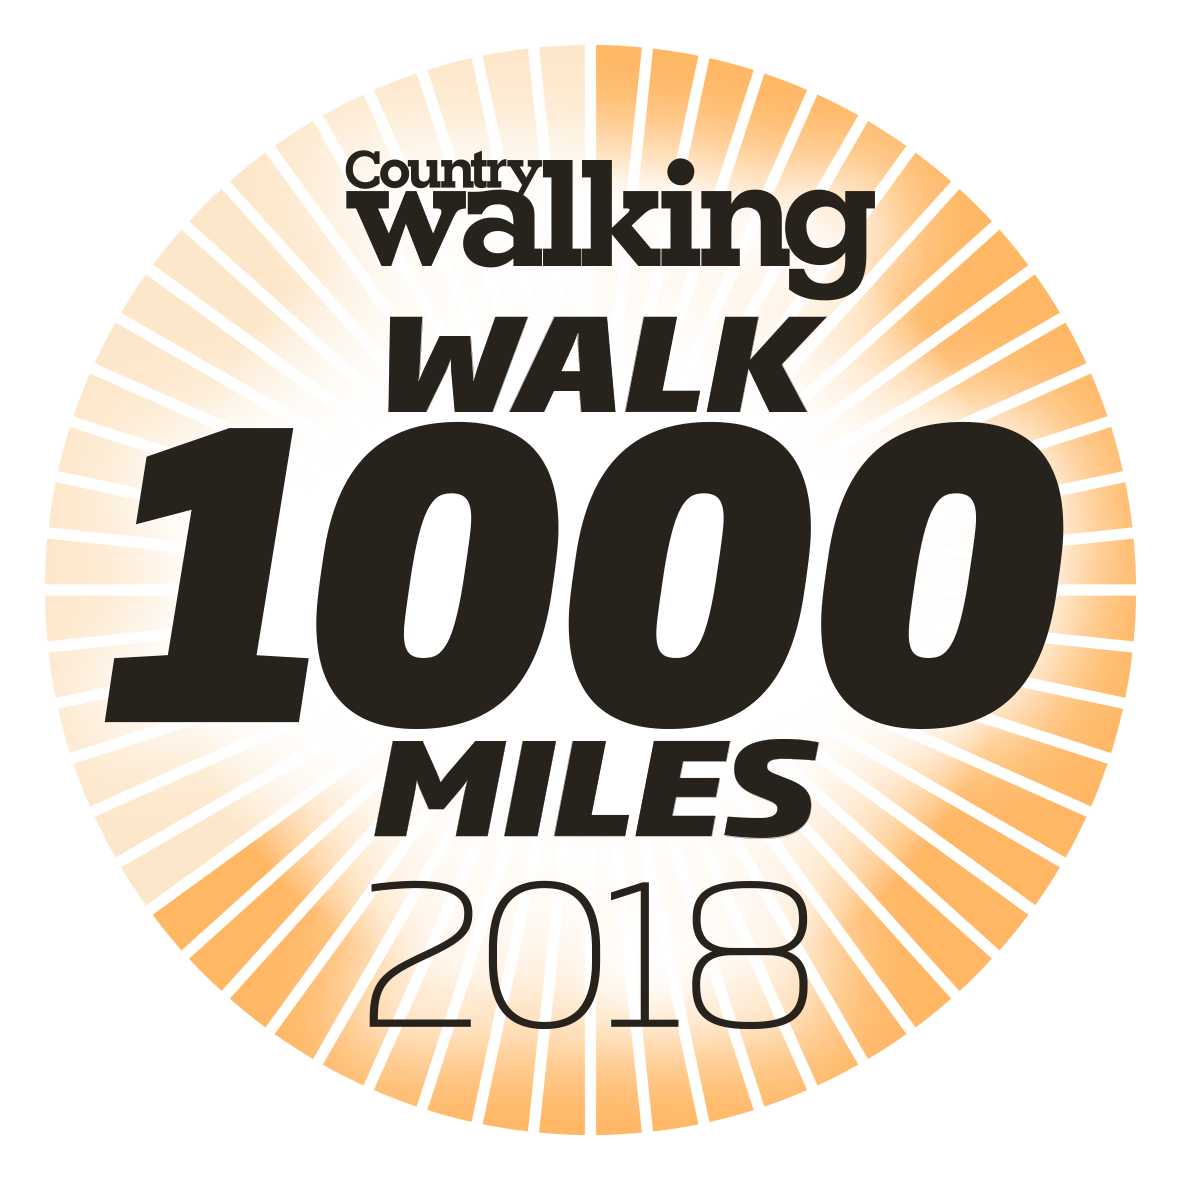 Walk 1000miles 2018 logo less segs.png